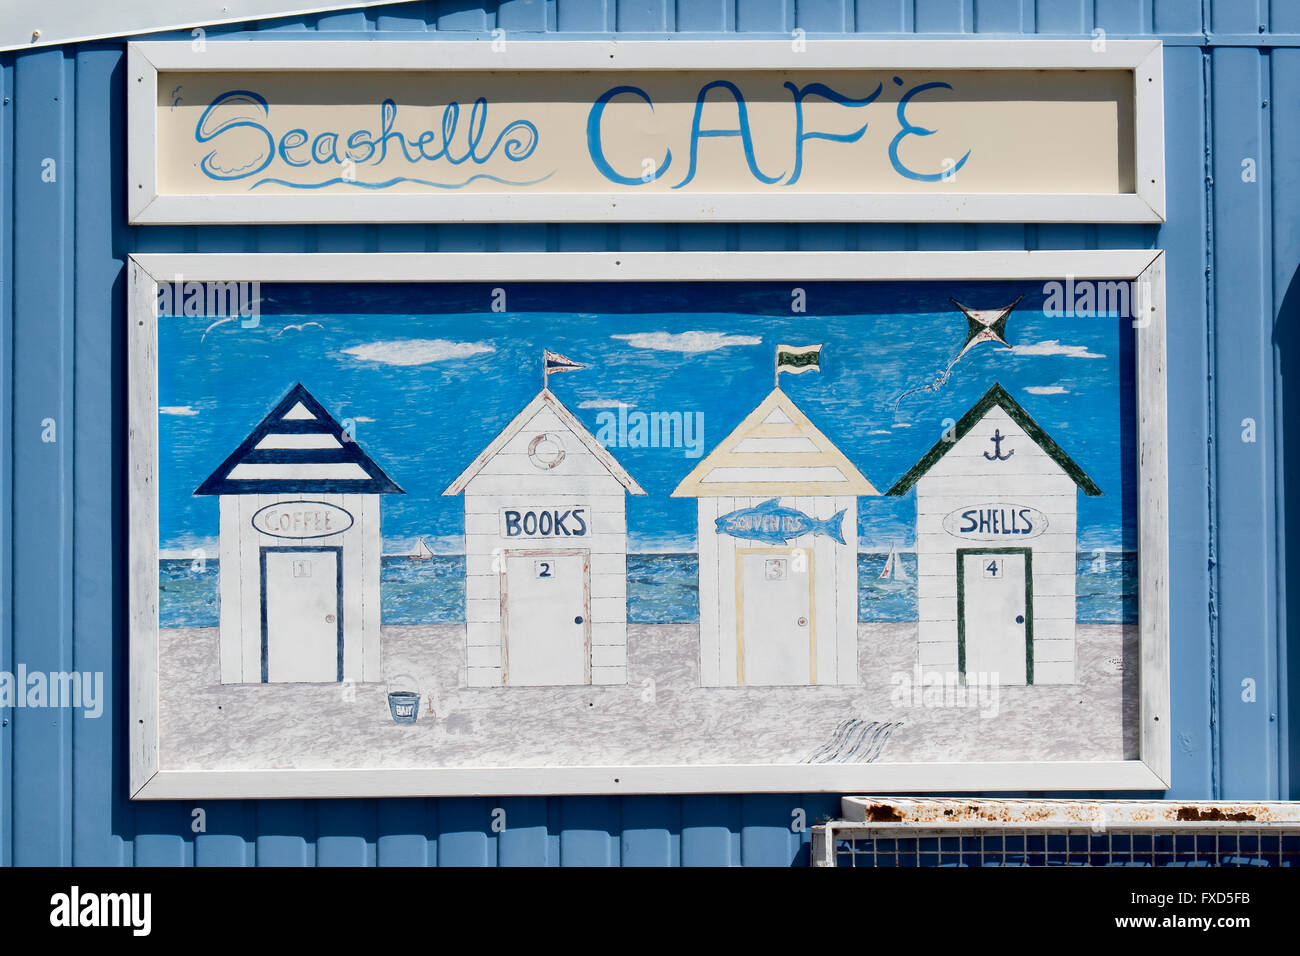 Signer les coquillages Cafe, Aragon St, WA Australie Cervantes Banque D'Images